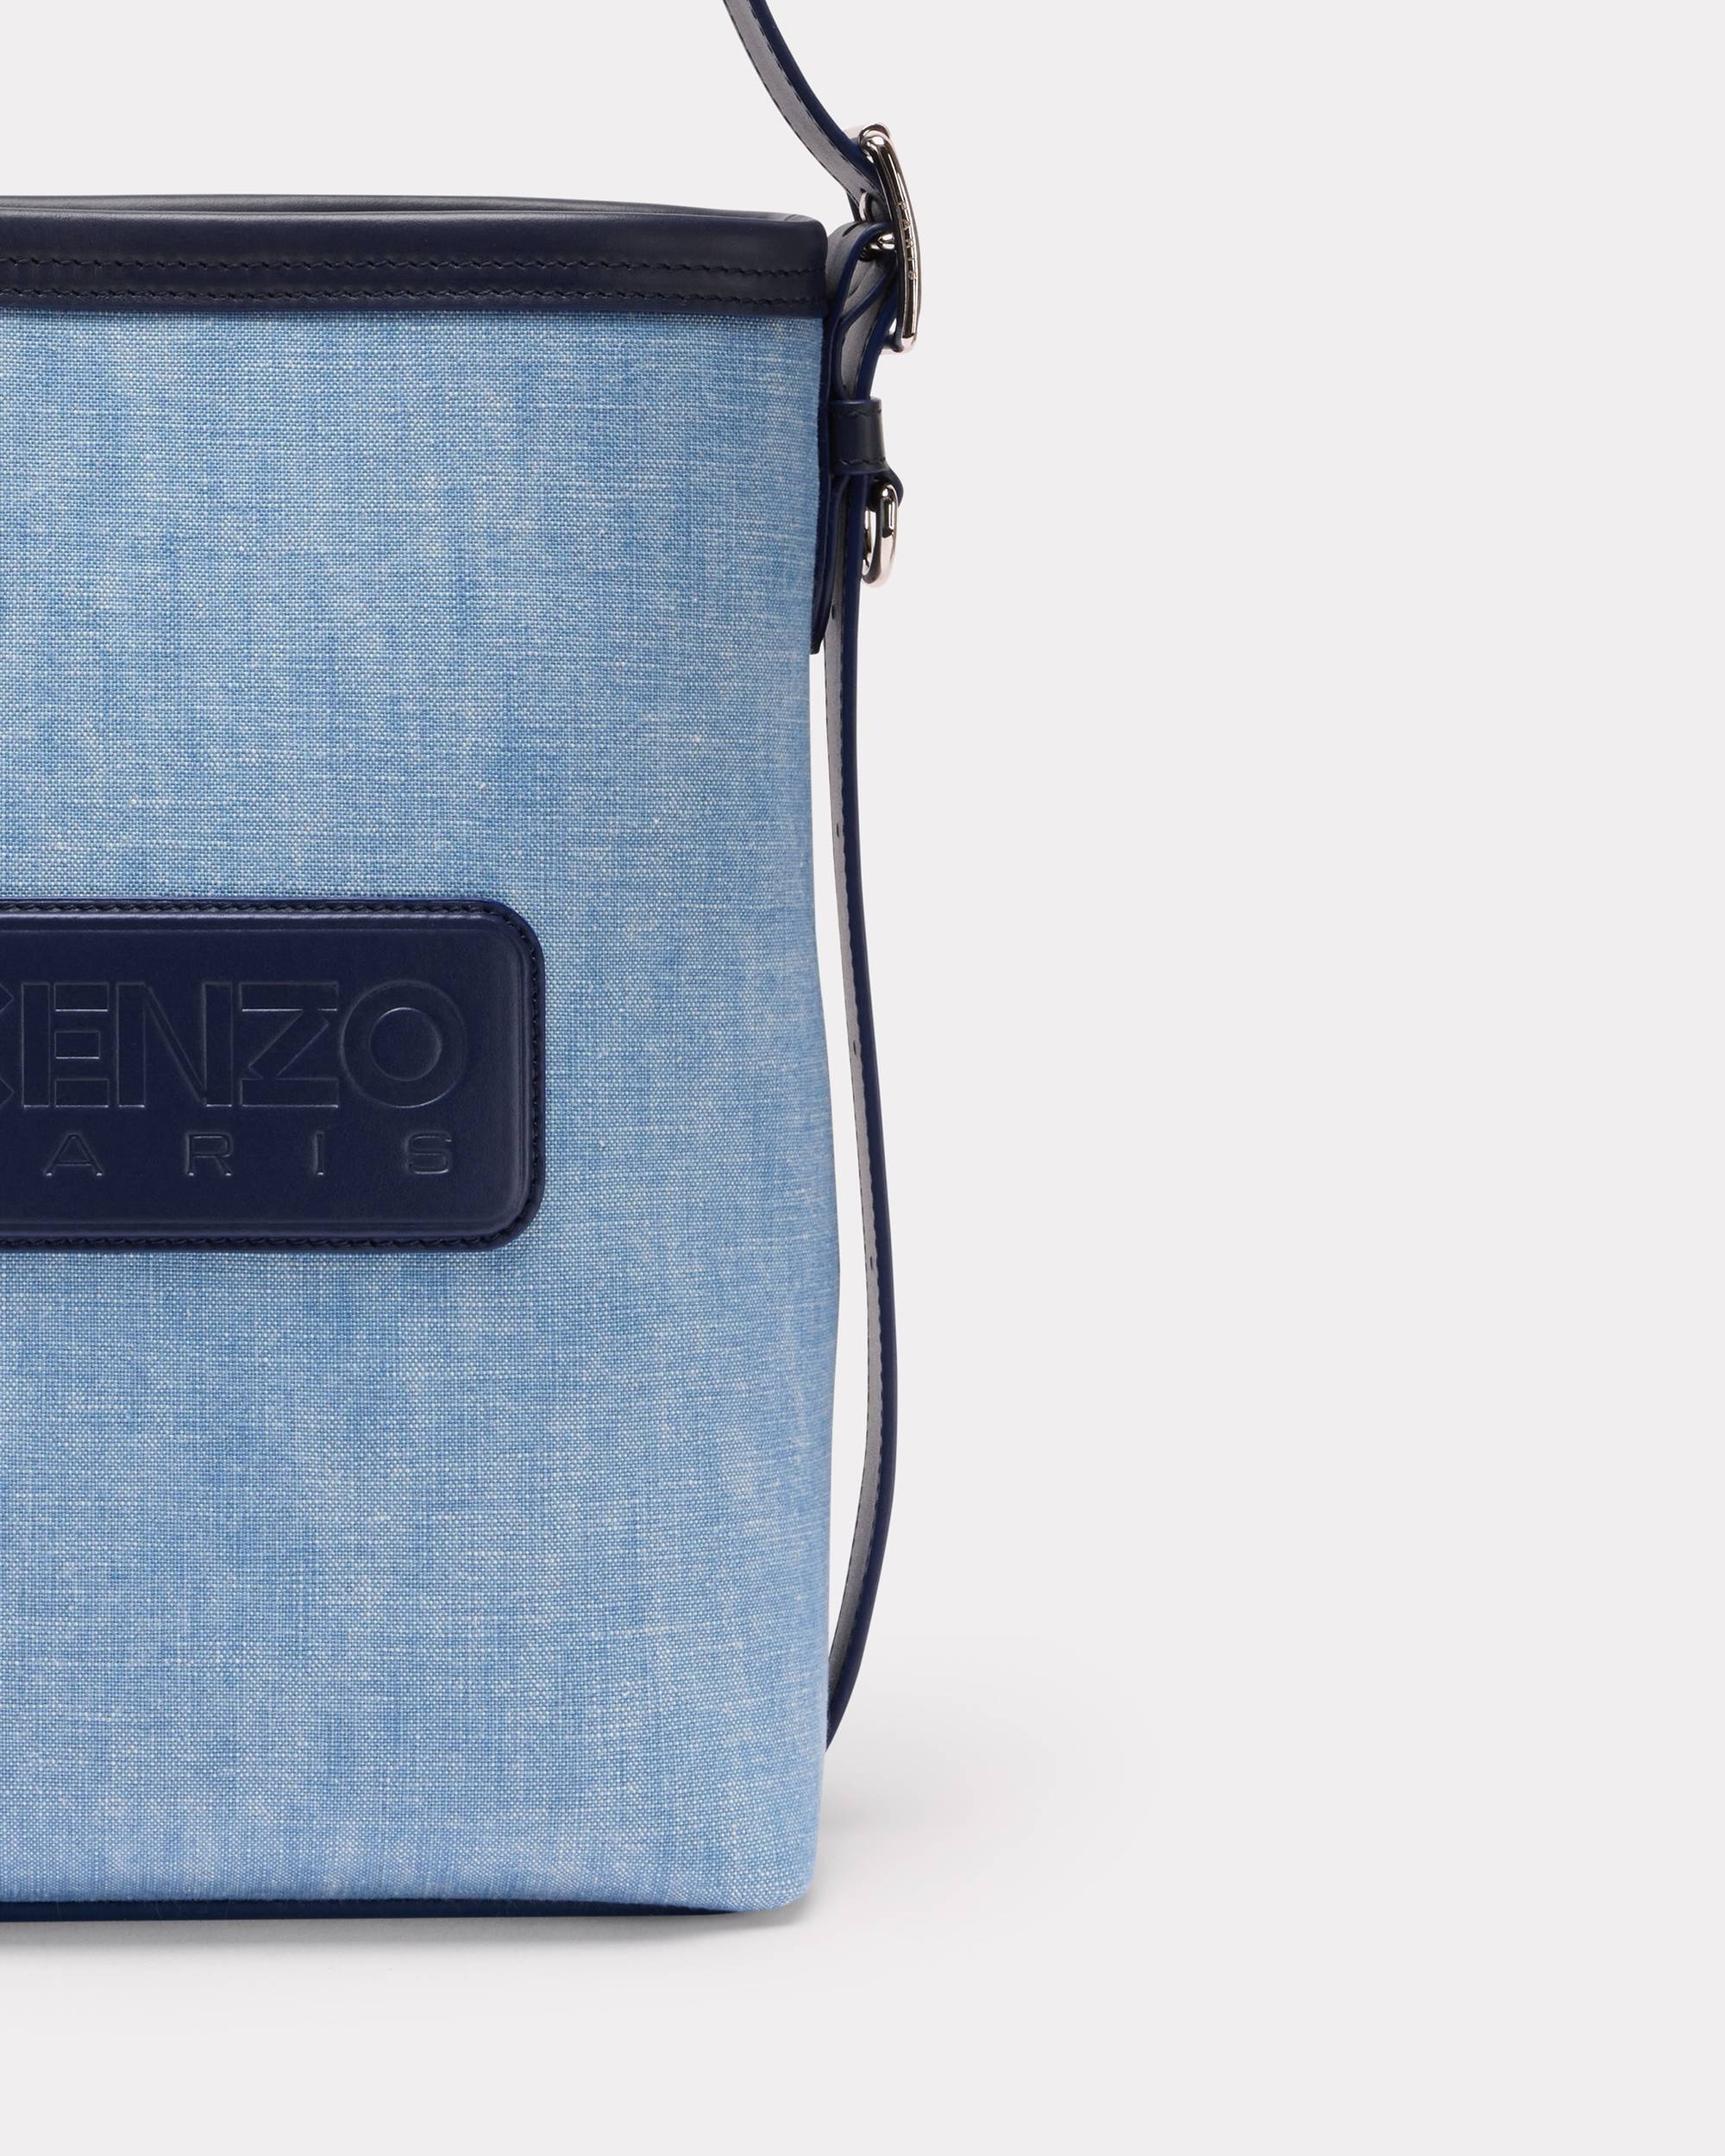 'KENZO 18' denim and leather bucket bag - 3